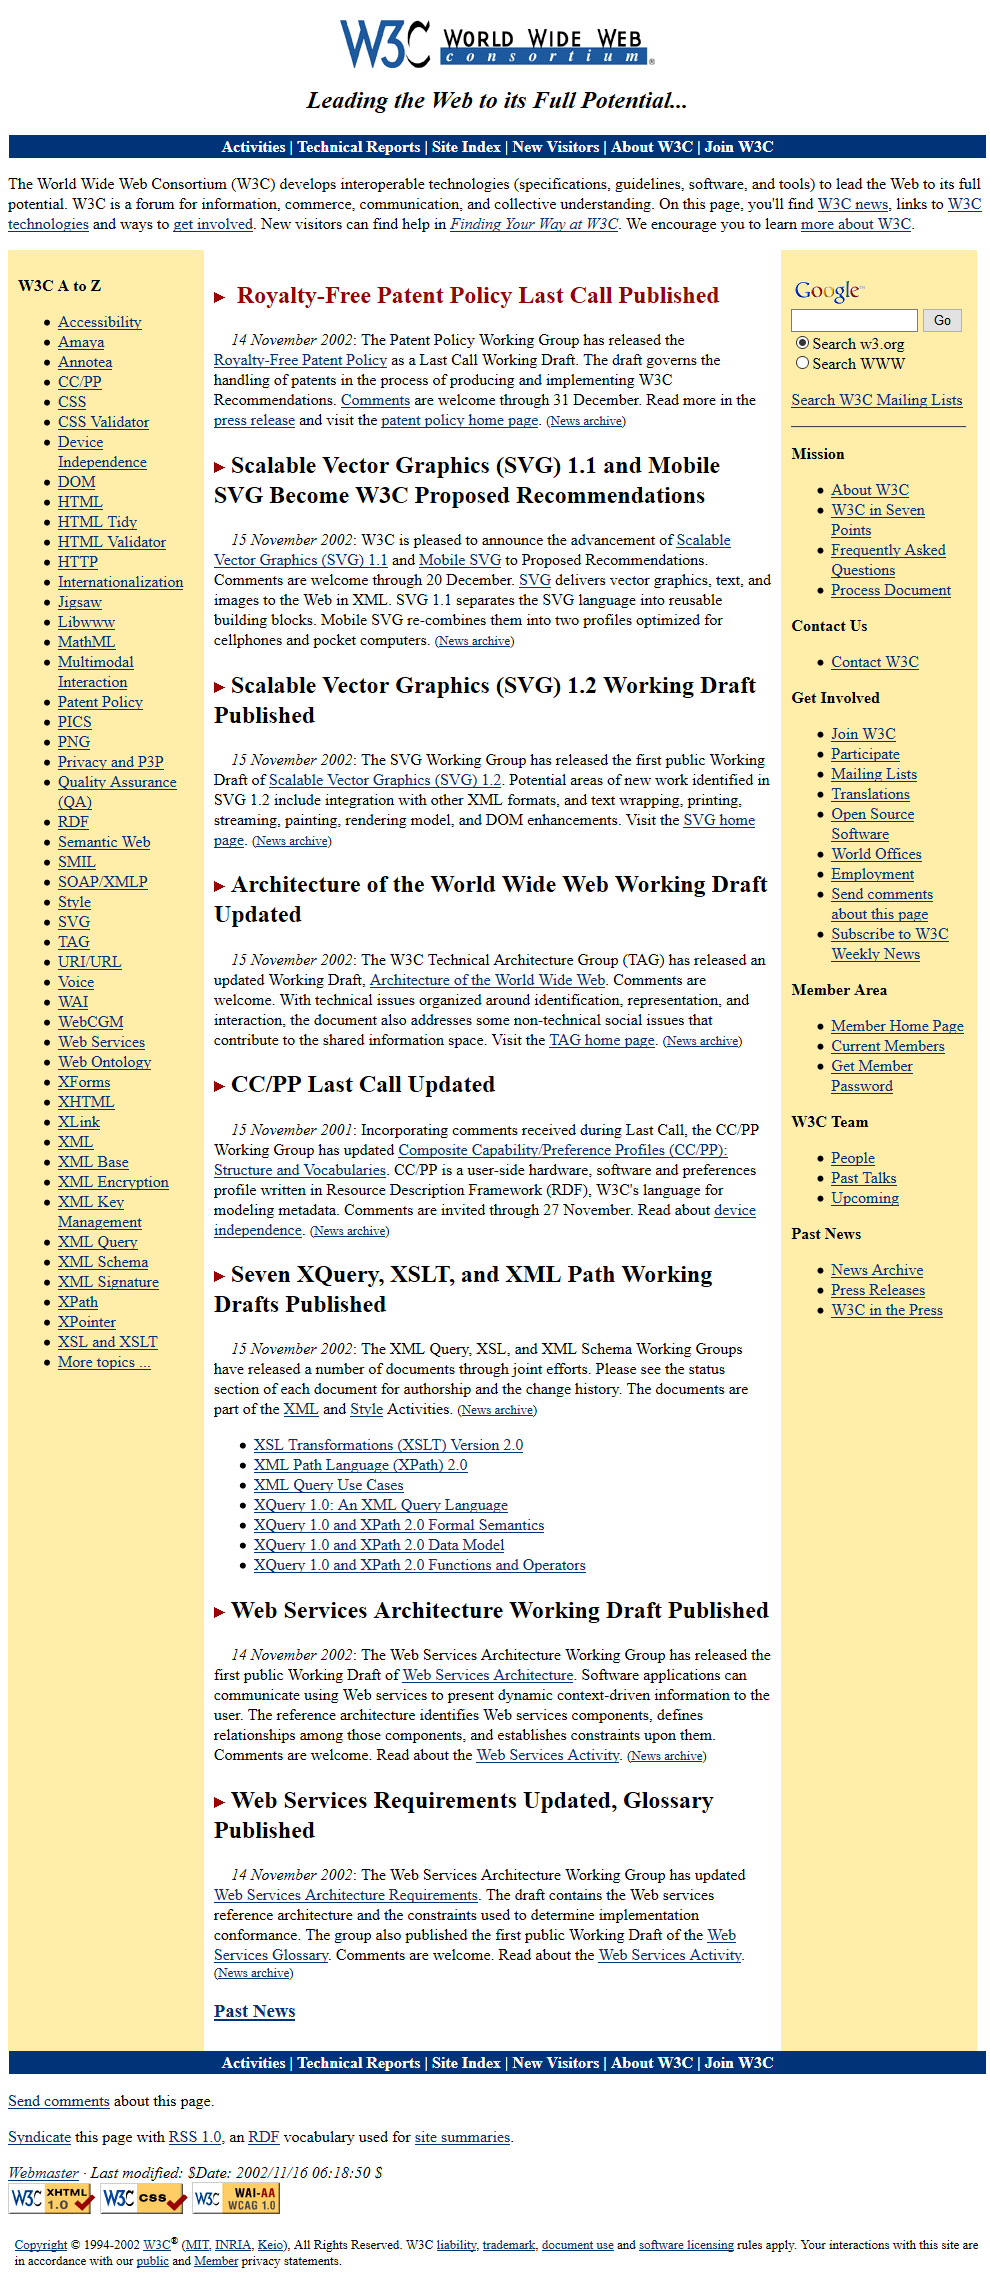 W3C.org in 2002